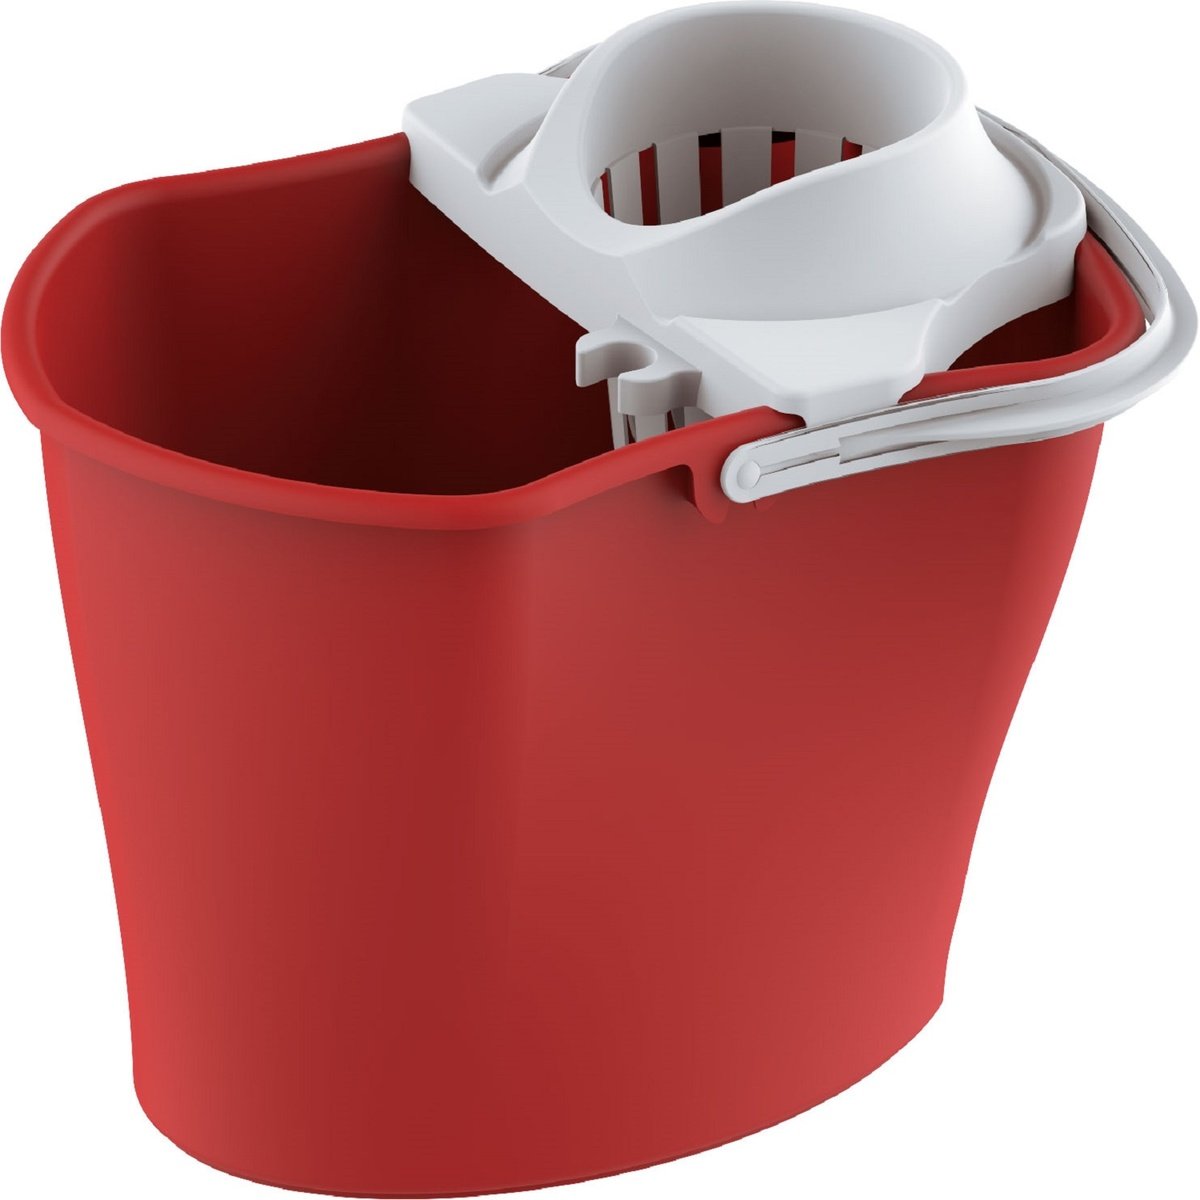 Cosmoplast Mop Bucket With Squeezer 429 Assorted Color